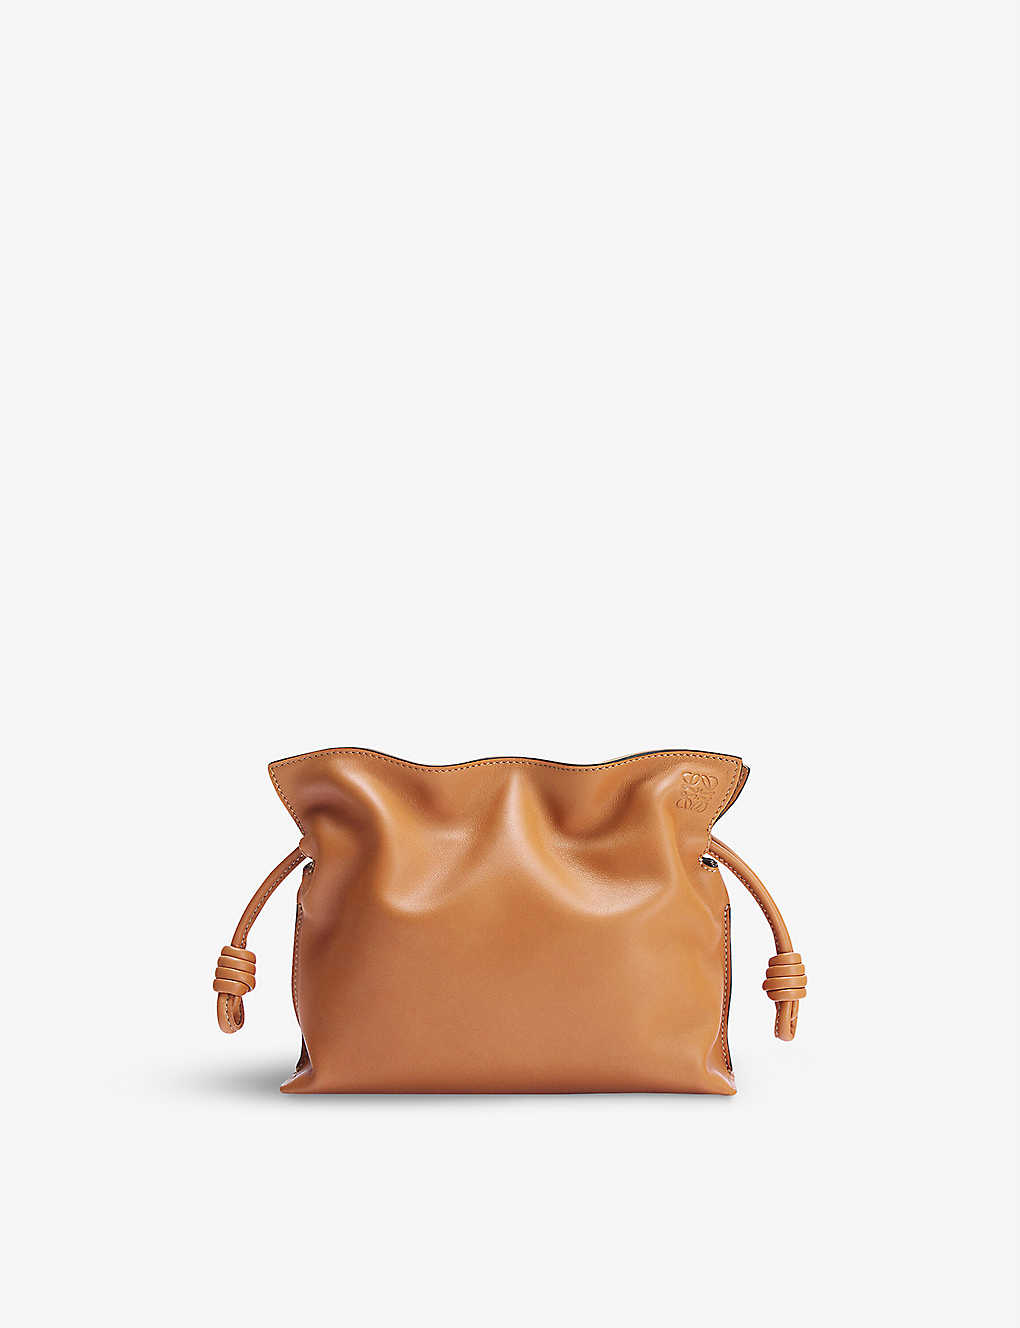 Loewe Flamenco Mini Leather Clutch Bag In Warm Desert